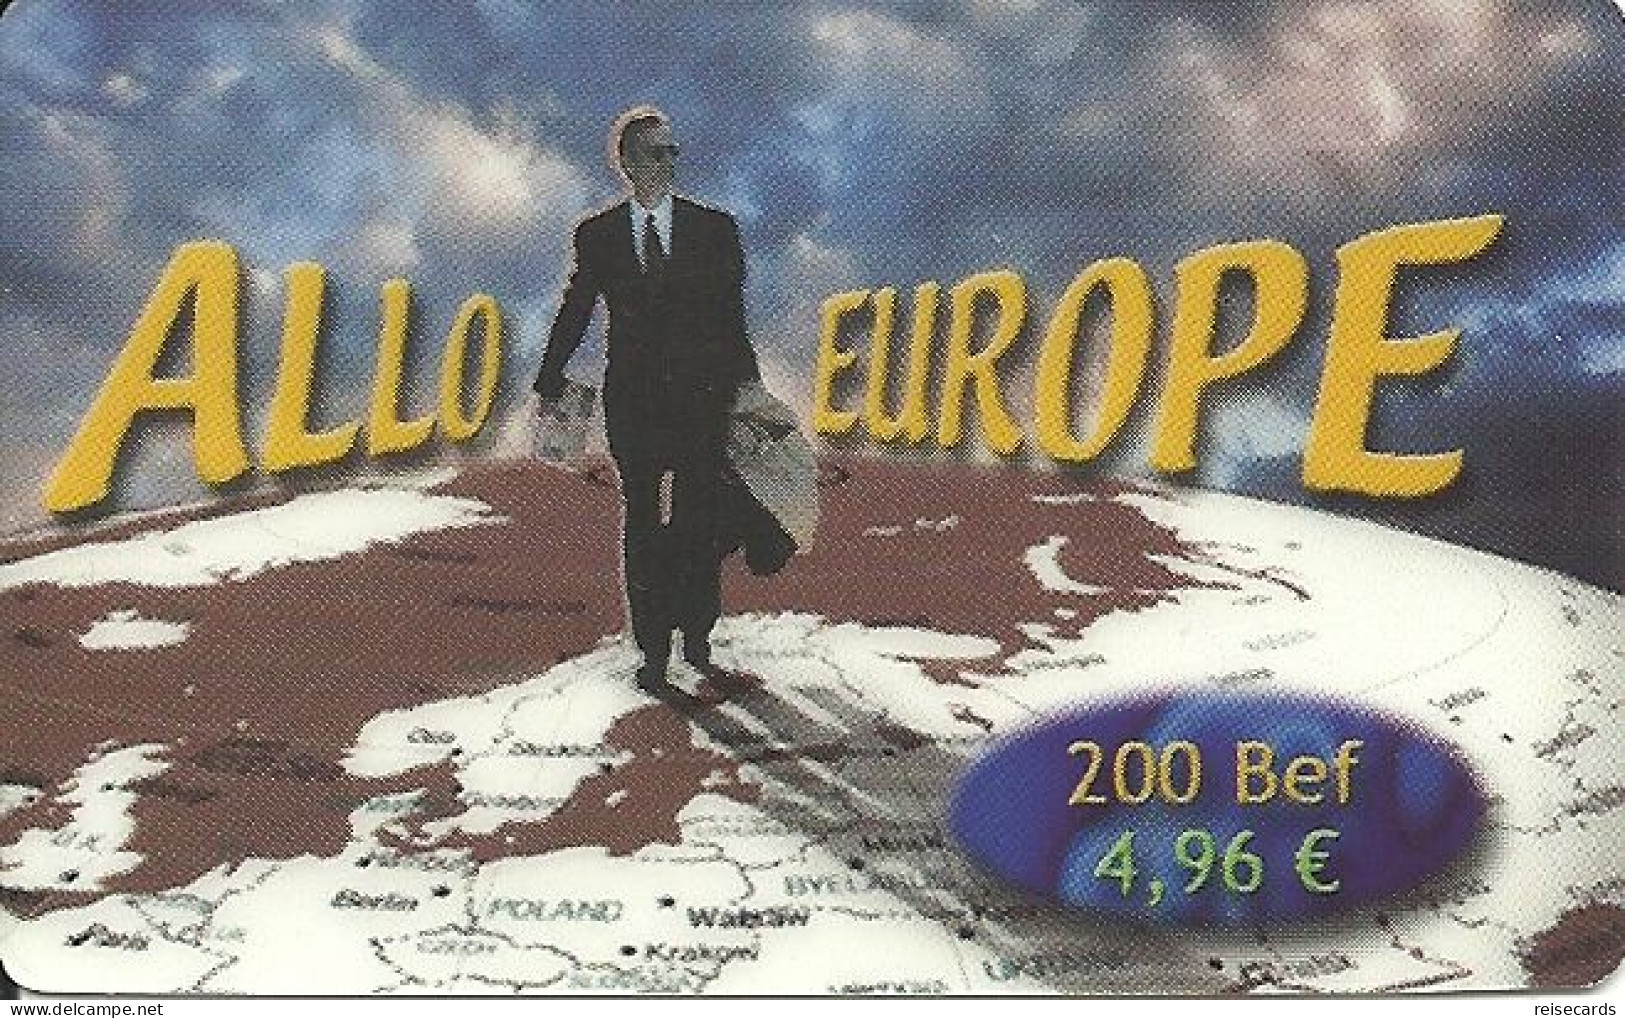 Belgium: Prepaid Allo Europe - [2] Prepaid & Refill Cards